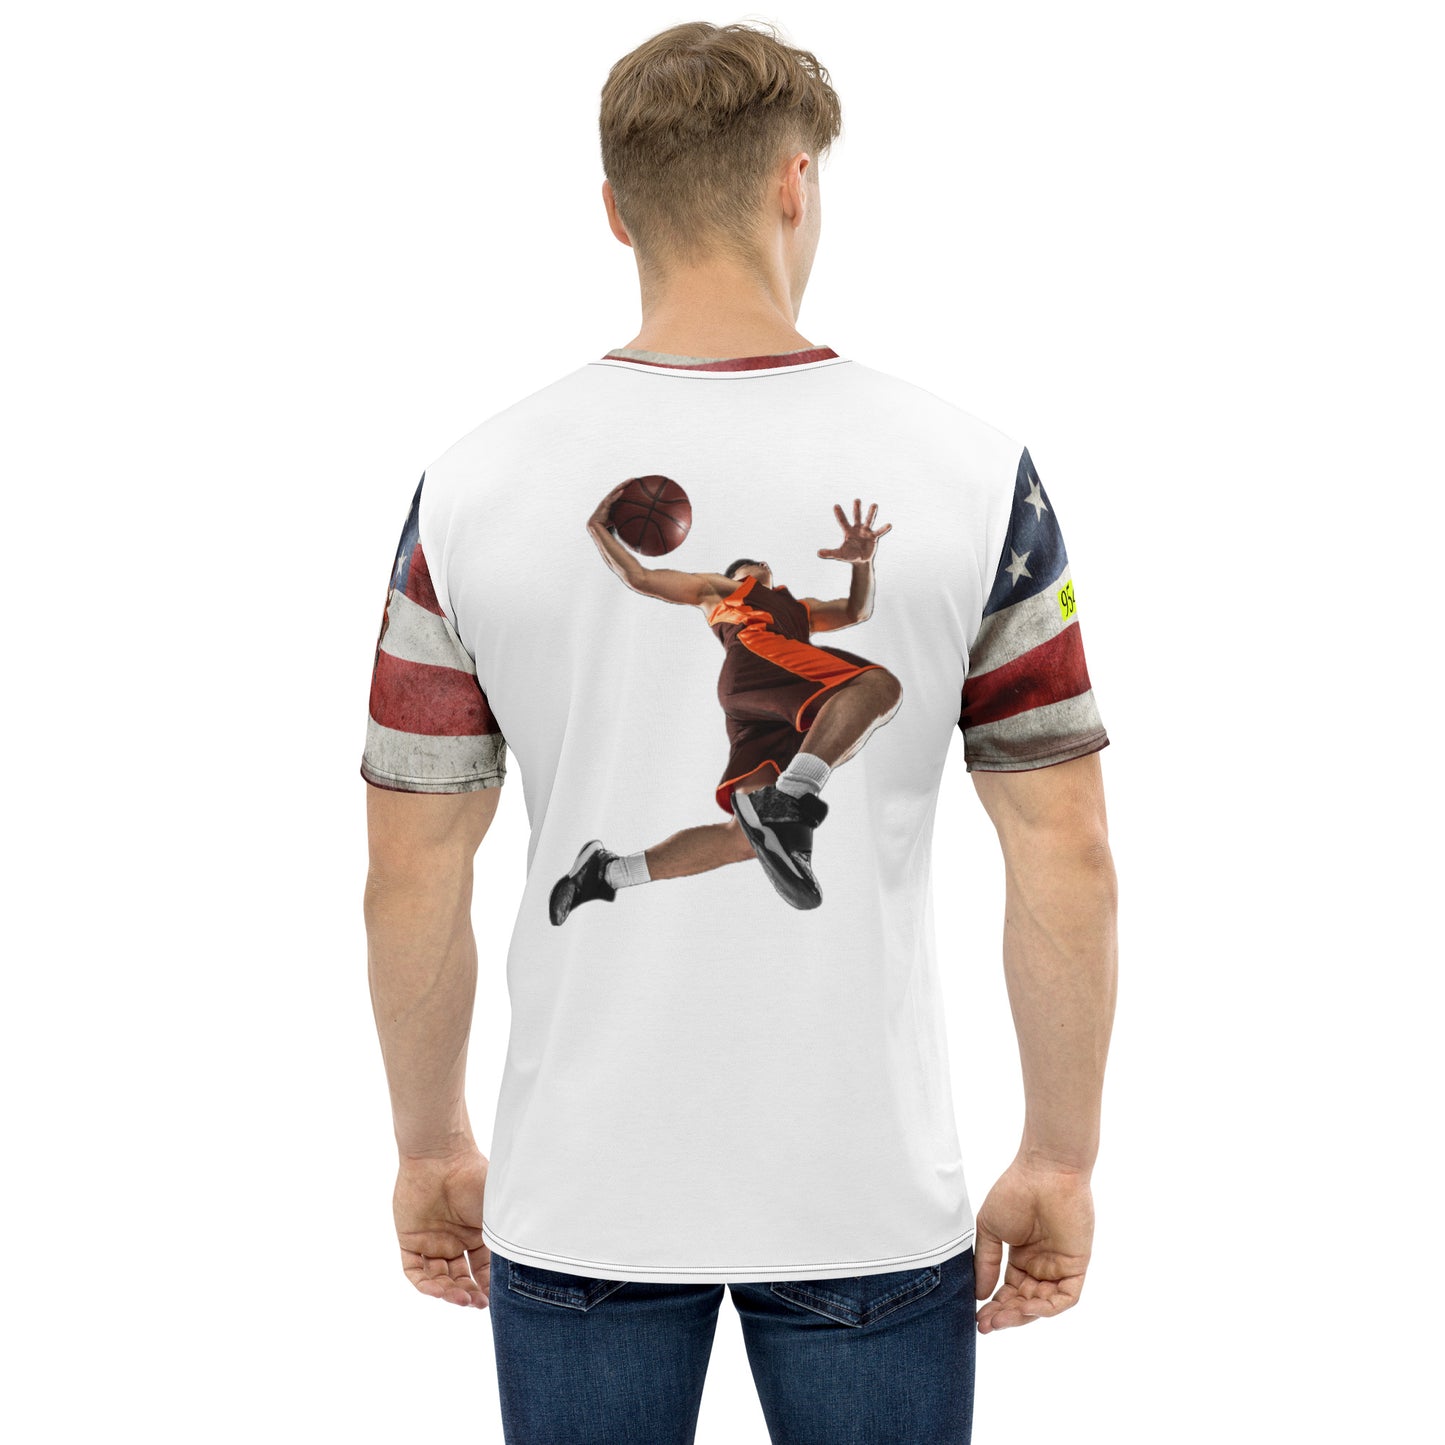 USA Basketball 954 t-shirt